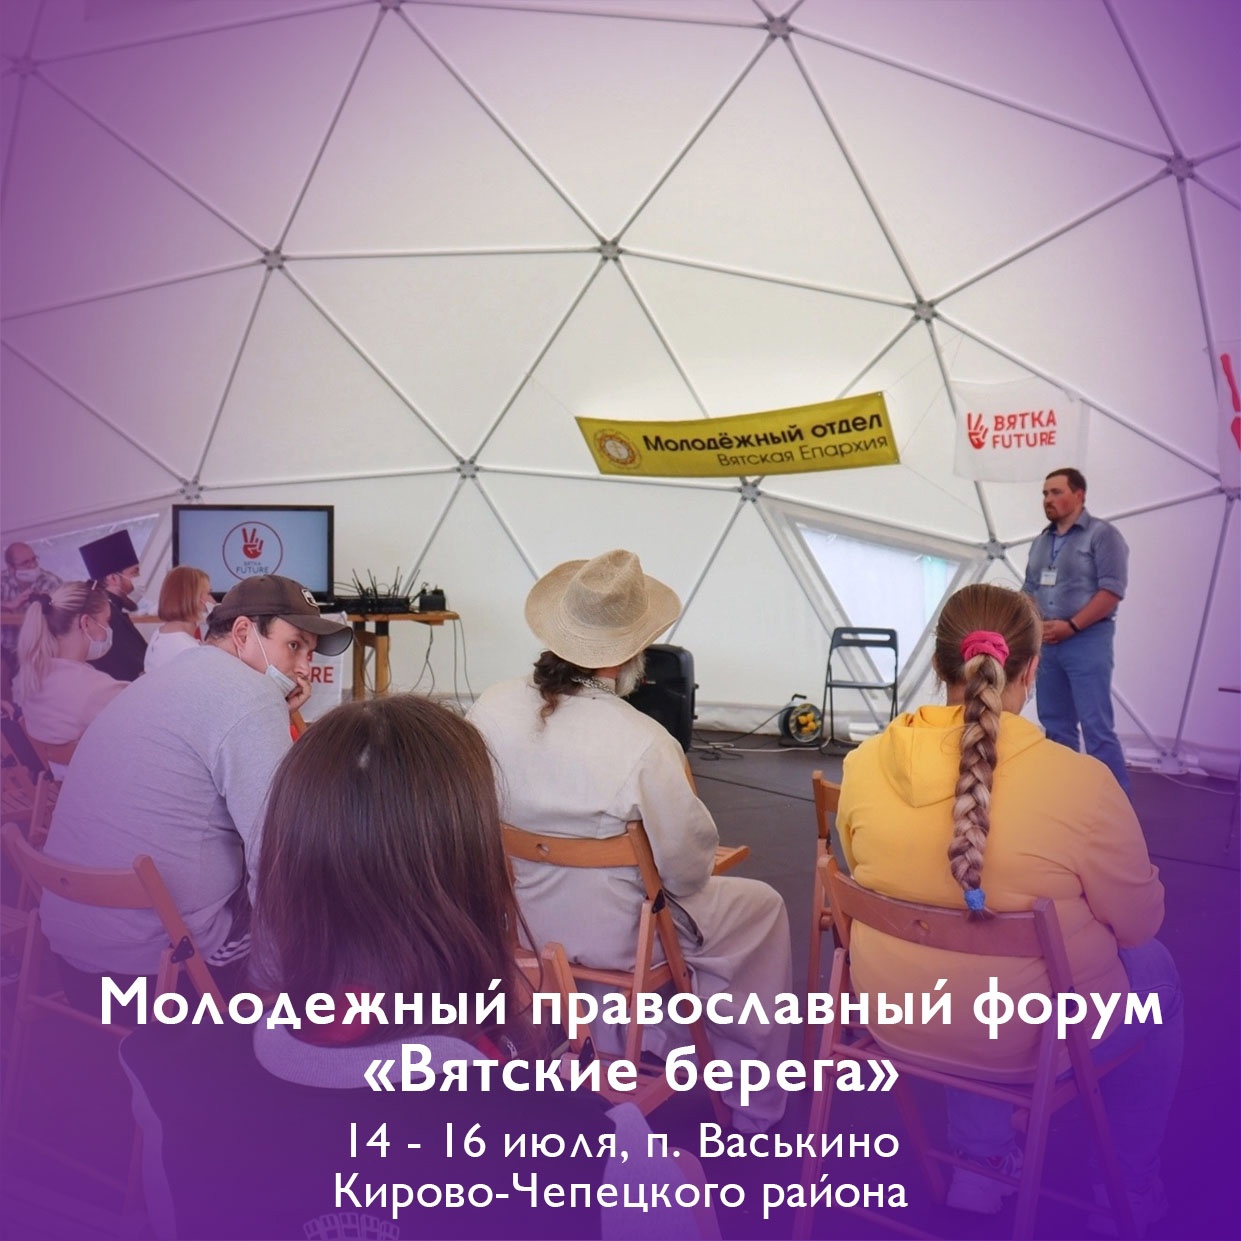 В Кирово-Чепецком районе пройдет православный форум для молодежи "Вятские берега"